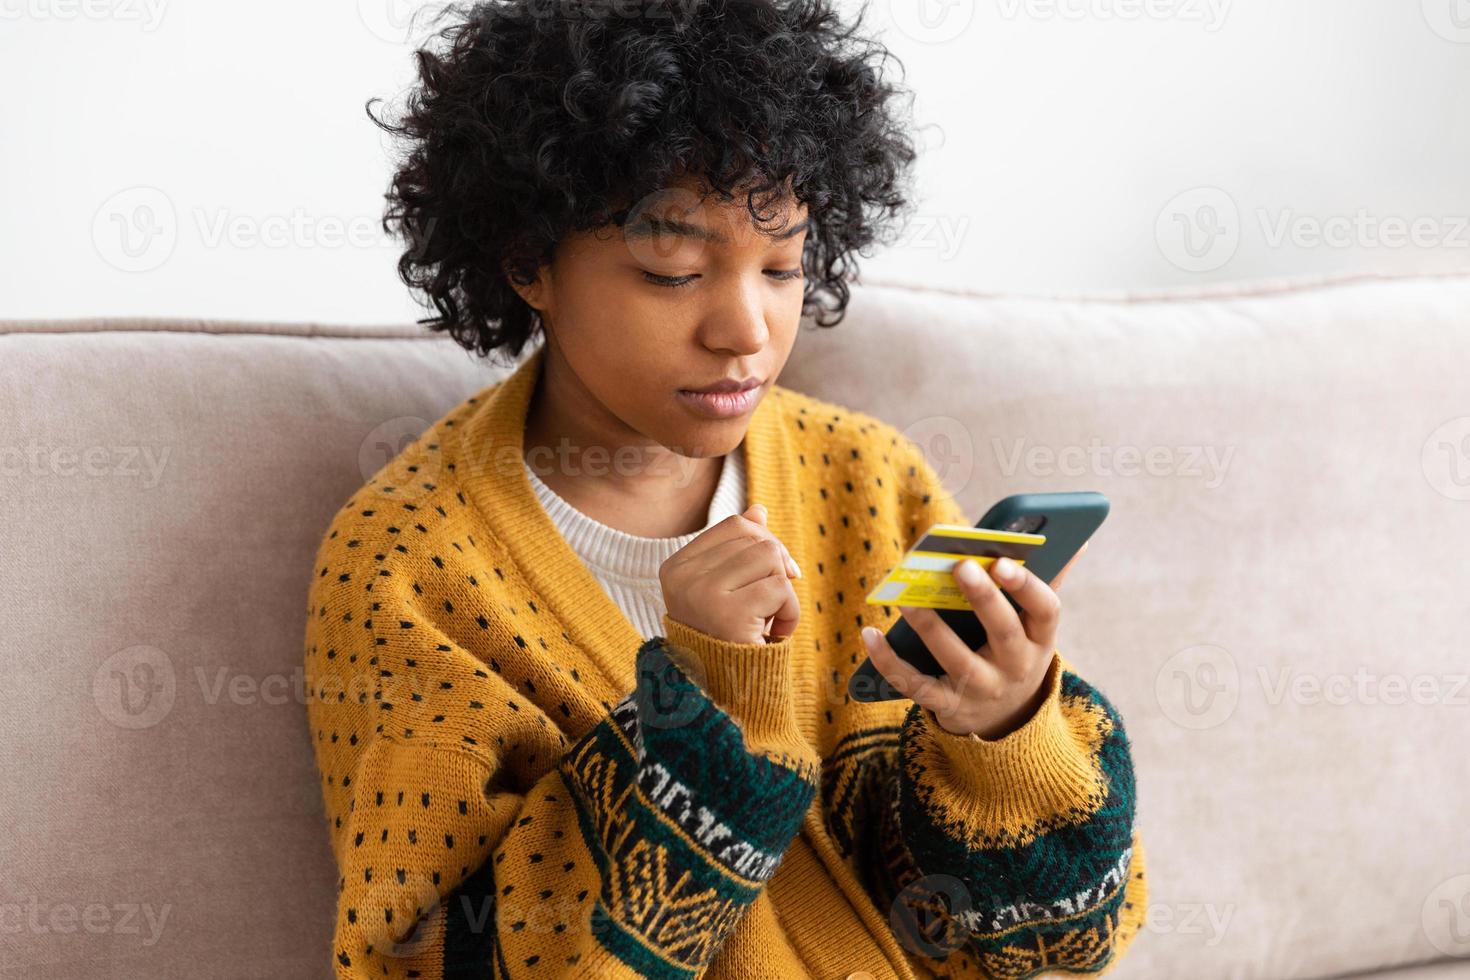 afrikanisch-amerikanische Frau, die online einkauft und ein Smartphone hält, das mit einer goldenen Kreditkarte bezahlt. Mädchen, die zu Hause sitzen und im Internet kaufen, geben Kreditkartendaten ein. Online-Shopping-E-Commerce-Lieferservice. foto